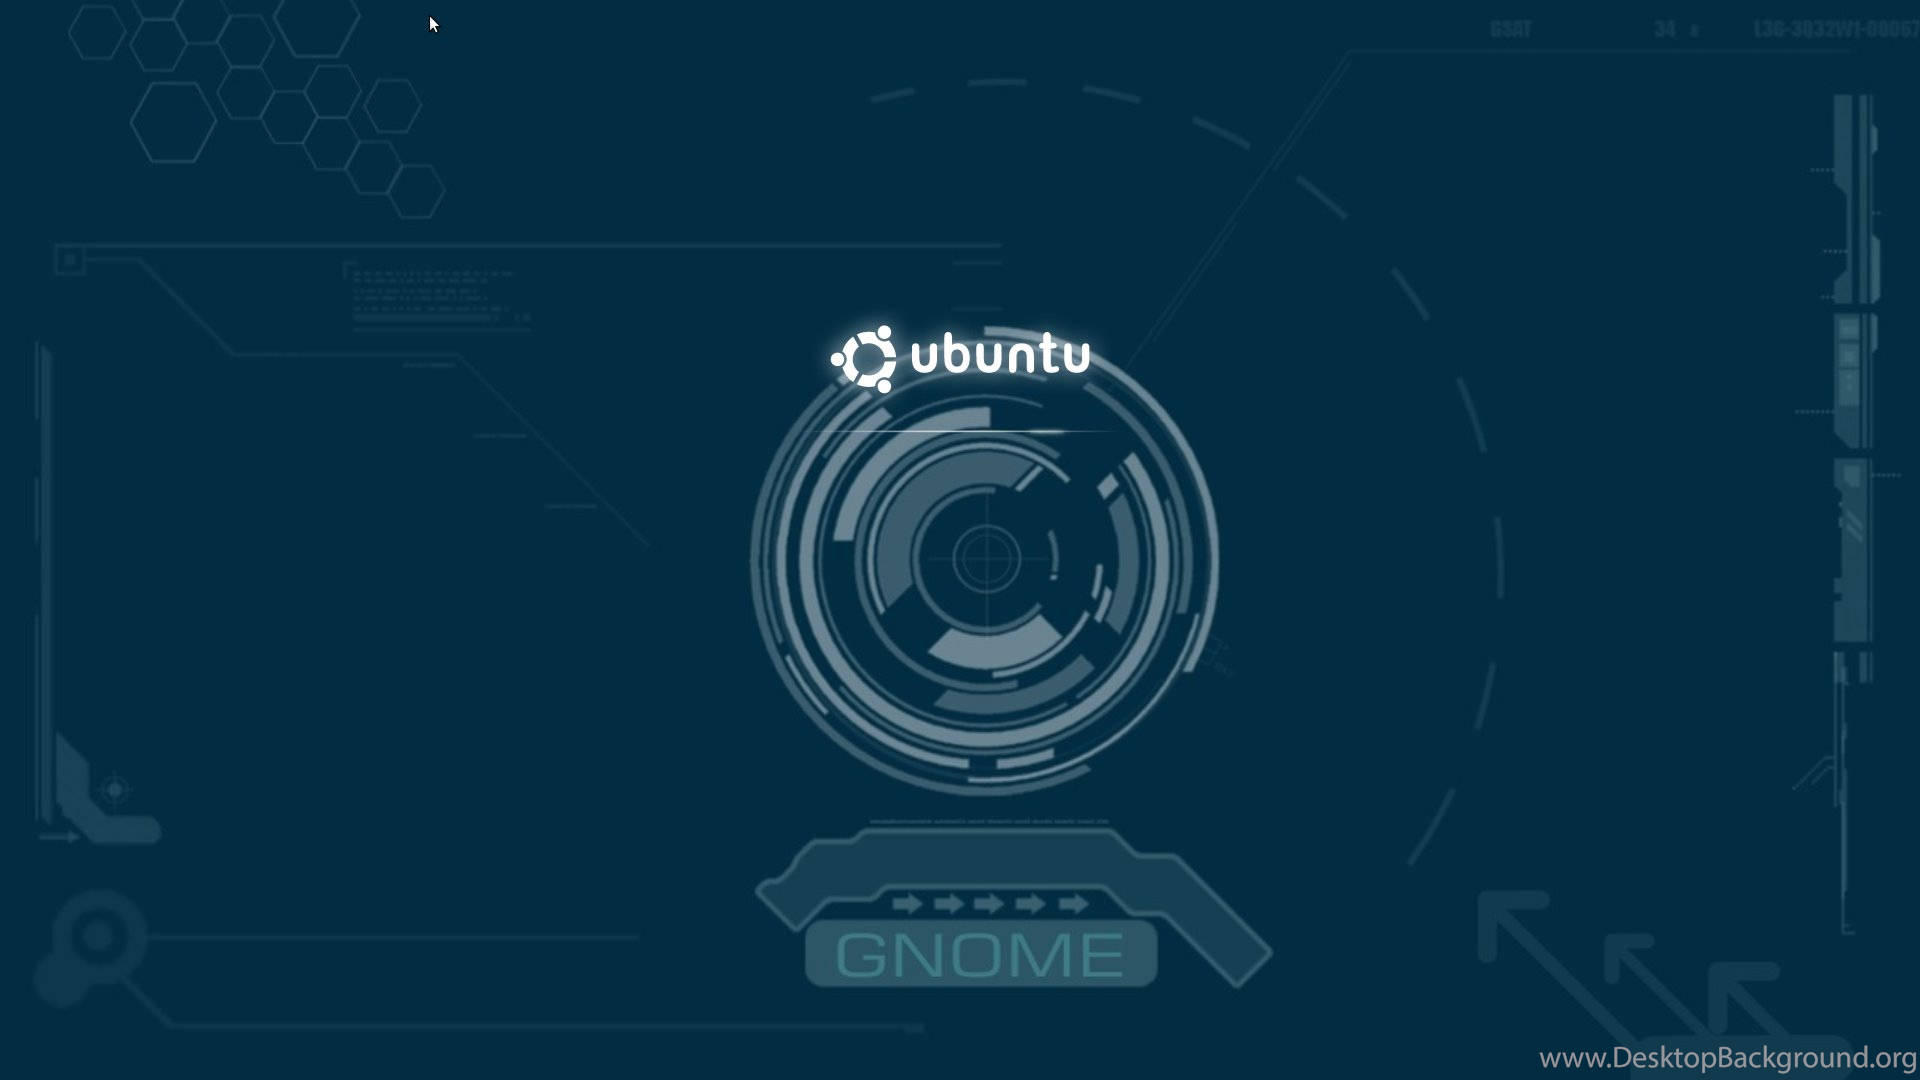 Ubuntu Gnome Default